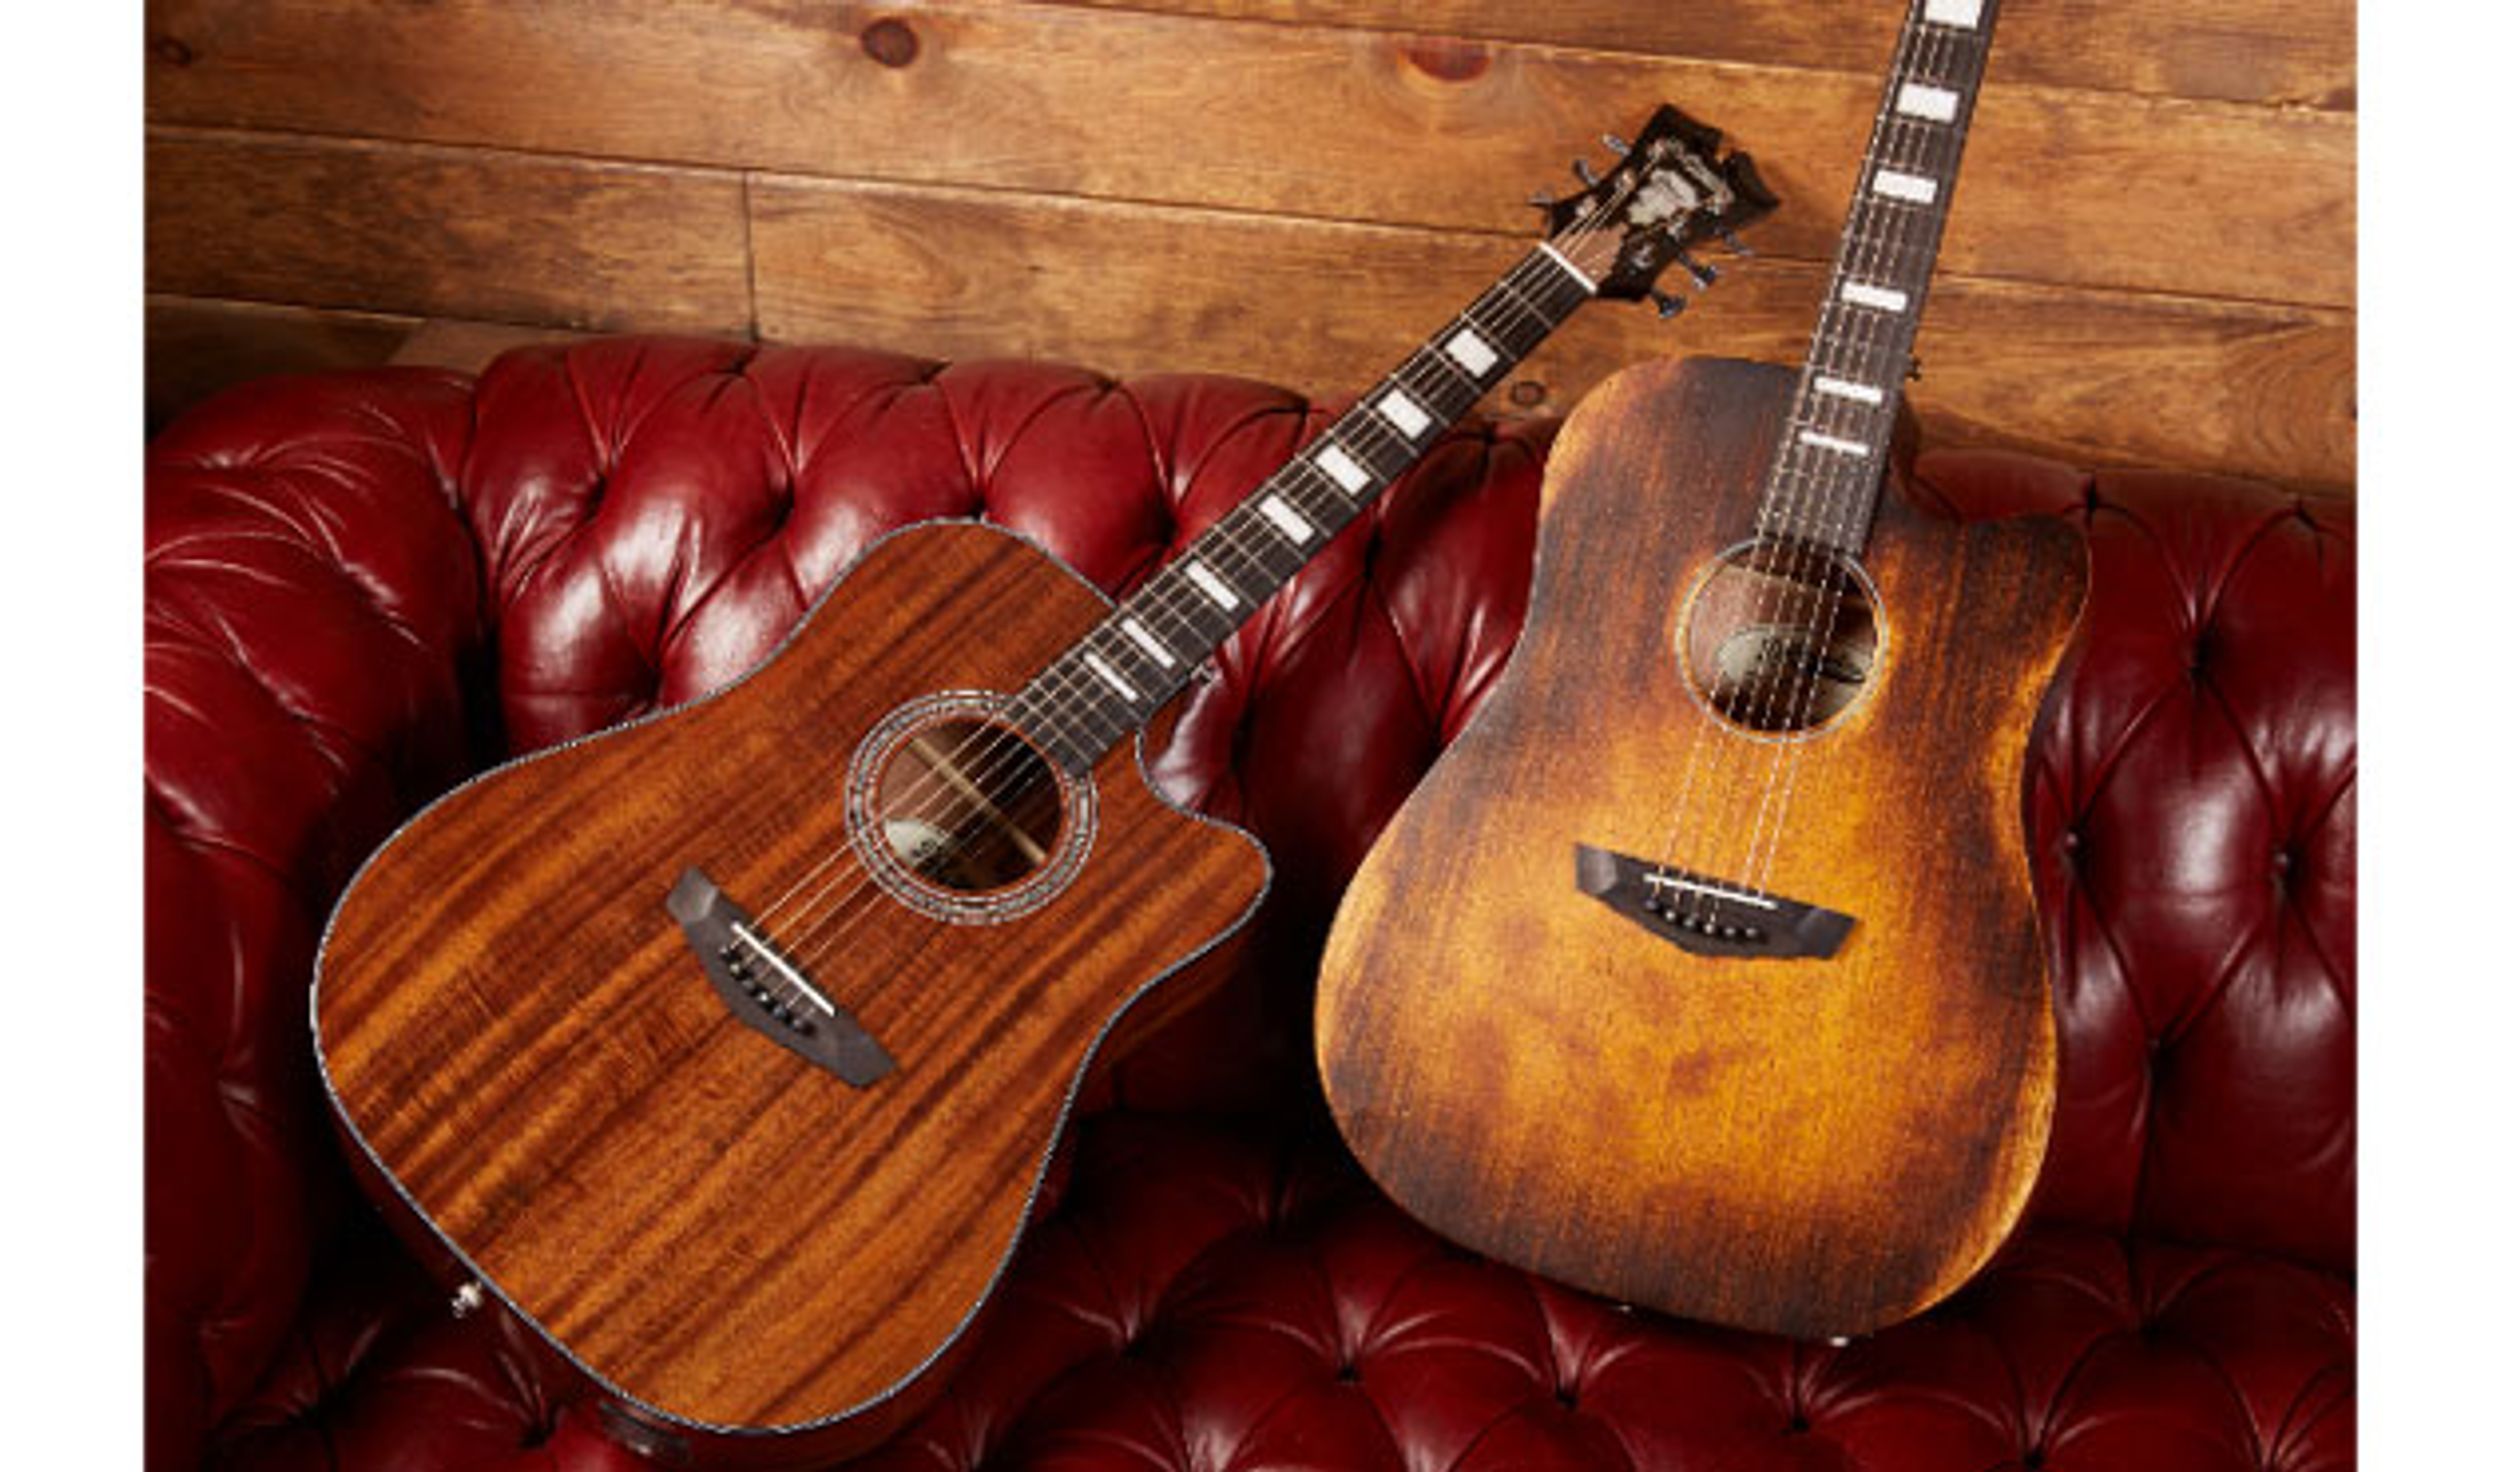 D’Angelico Guitars Introduces New Premier Series Acoustics